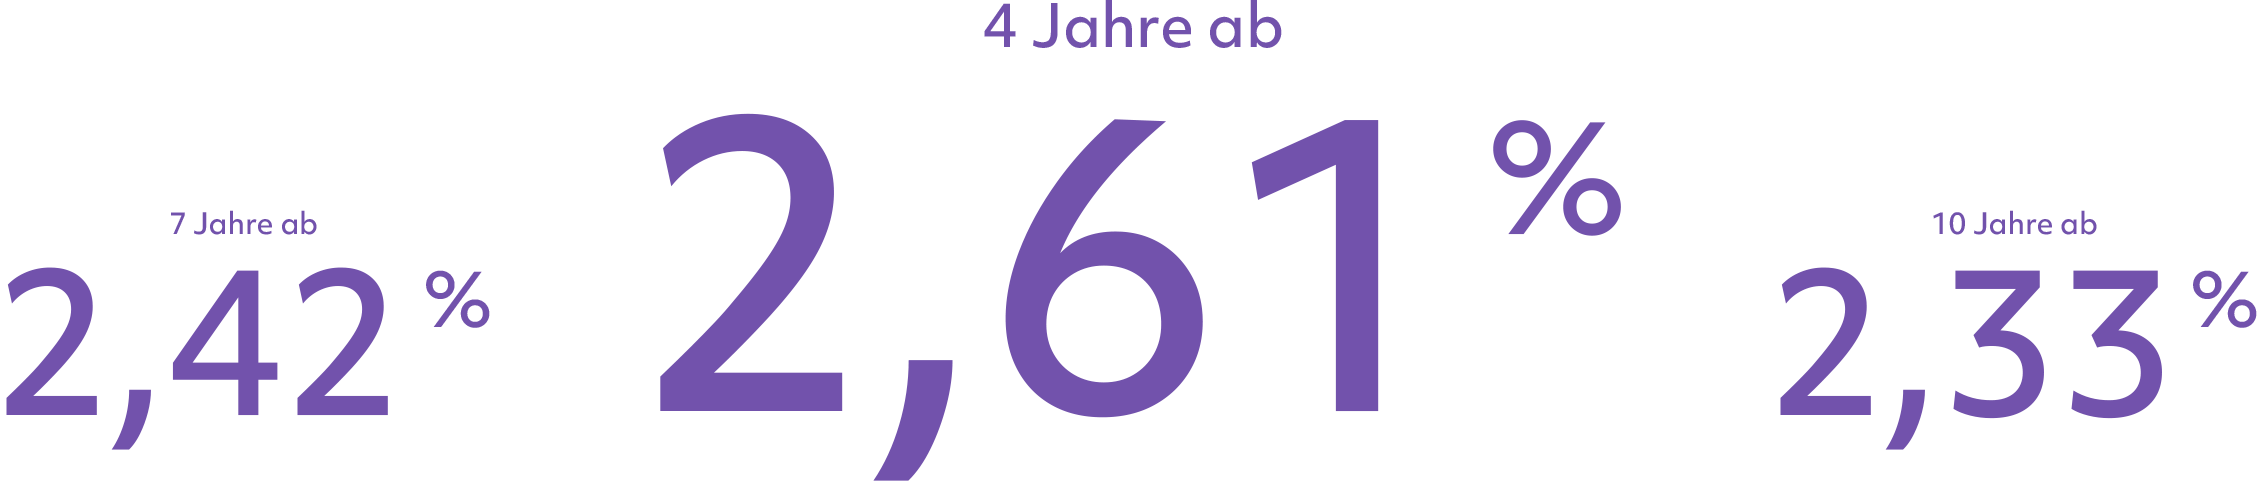 Deutsch: 4 Jahre ab 2,55%, 7 Jahre ab 2,47% und 10 Jahre ab 2,43%; Französisch: 4 ans à partir de 2,55 %, 7 ans à partir de 2,47% et 10 ans à partir de 2,43%